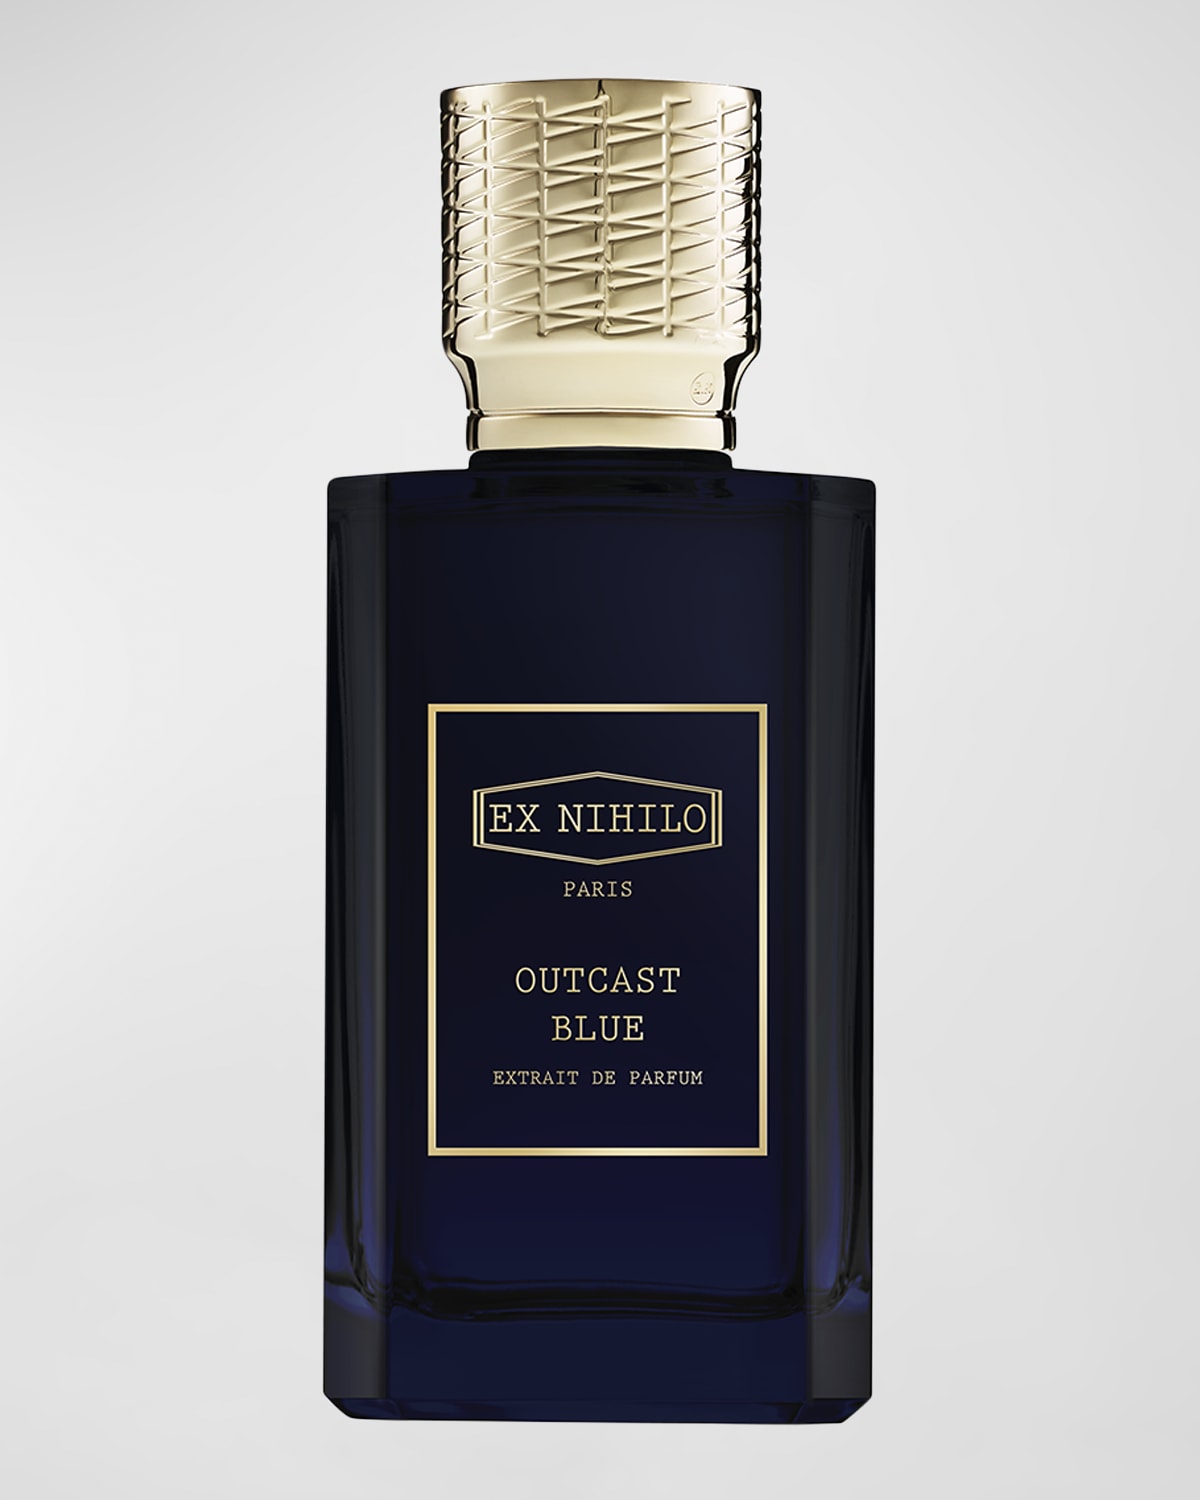 Ex Nihilo Outcast Blue Extrait de Parfum, 3.4 oz.